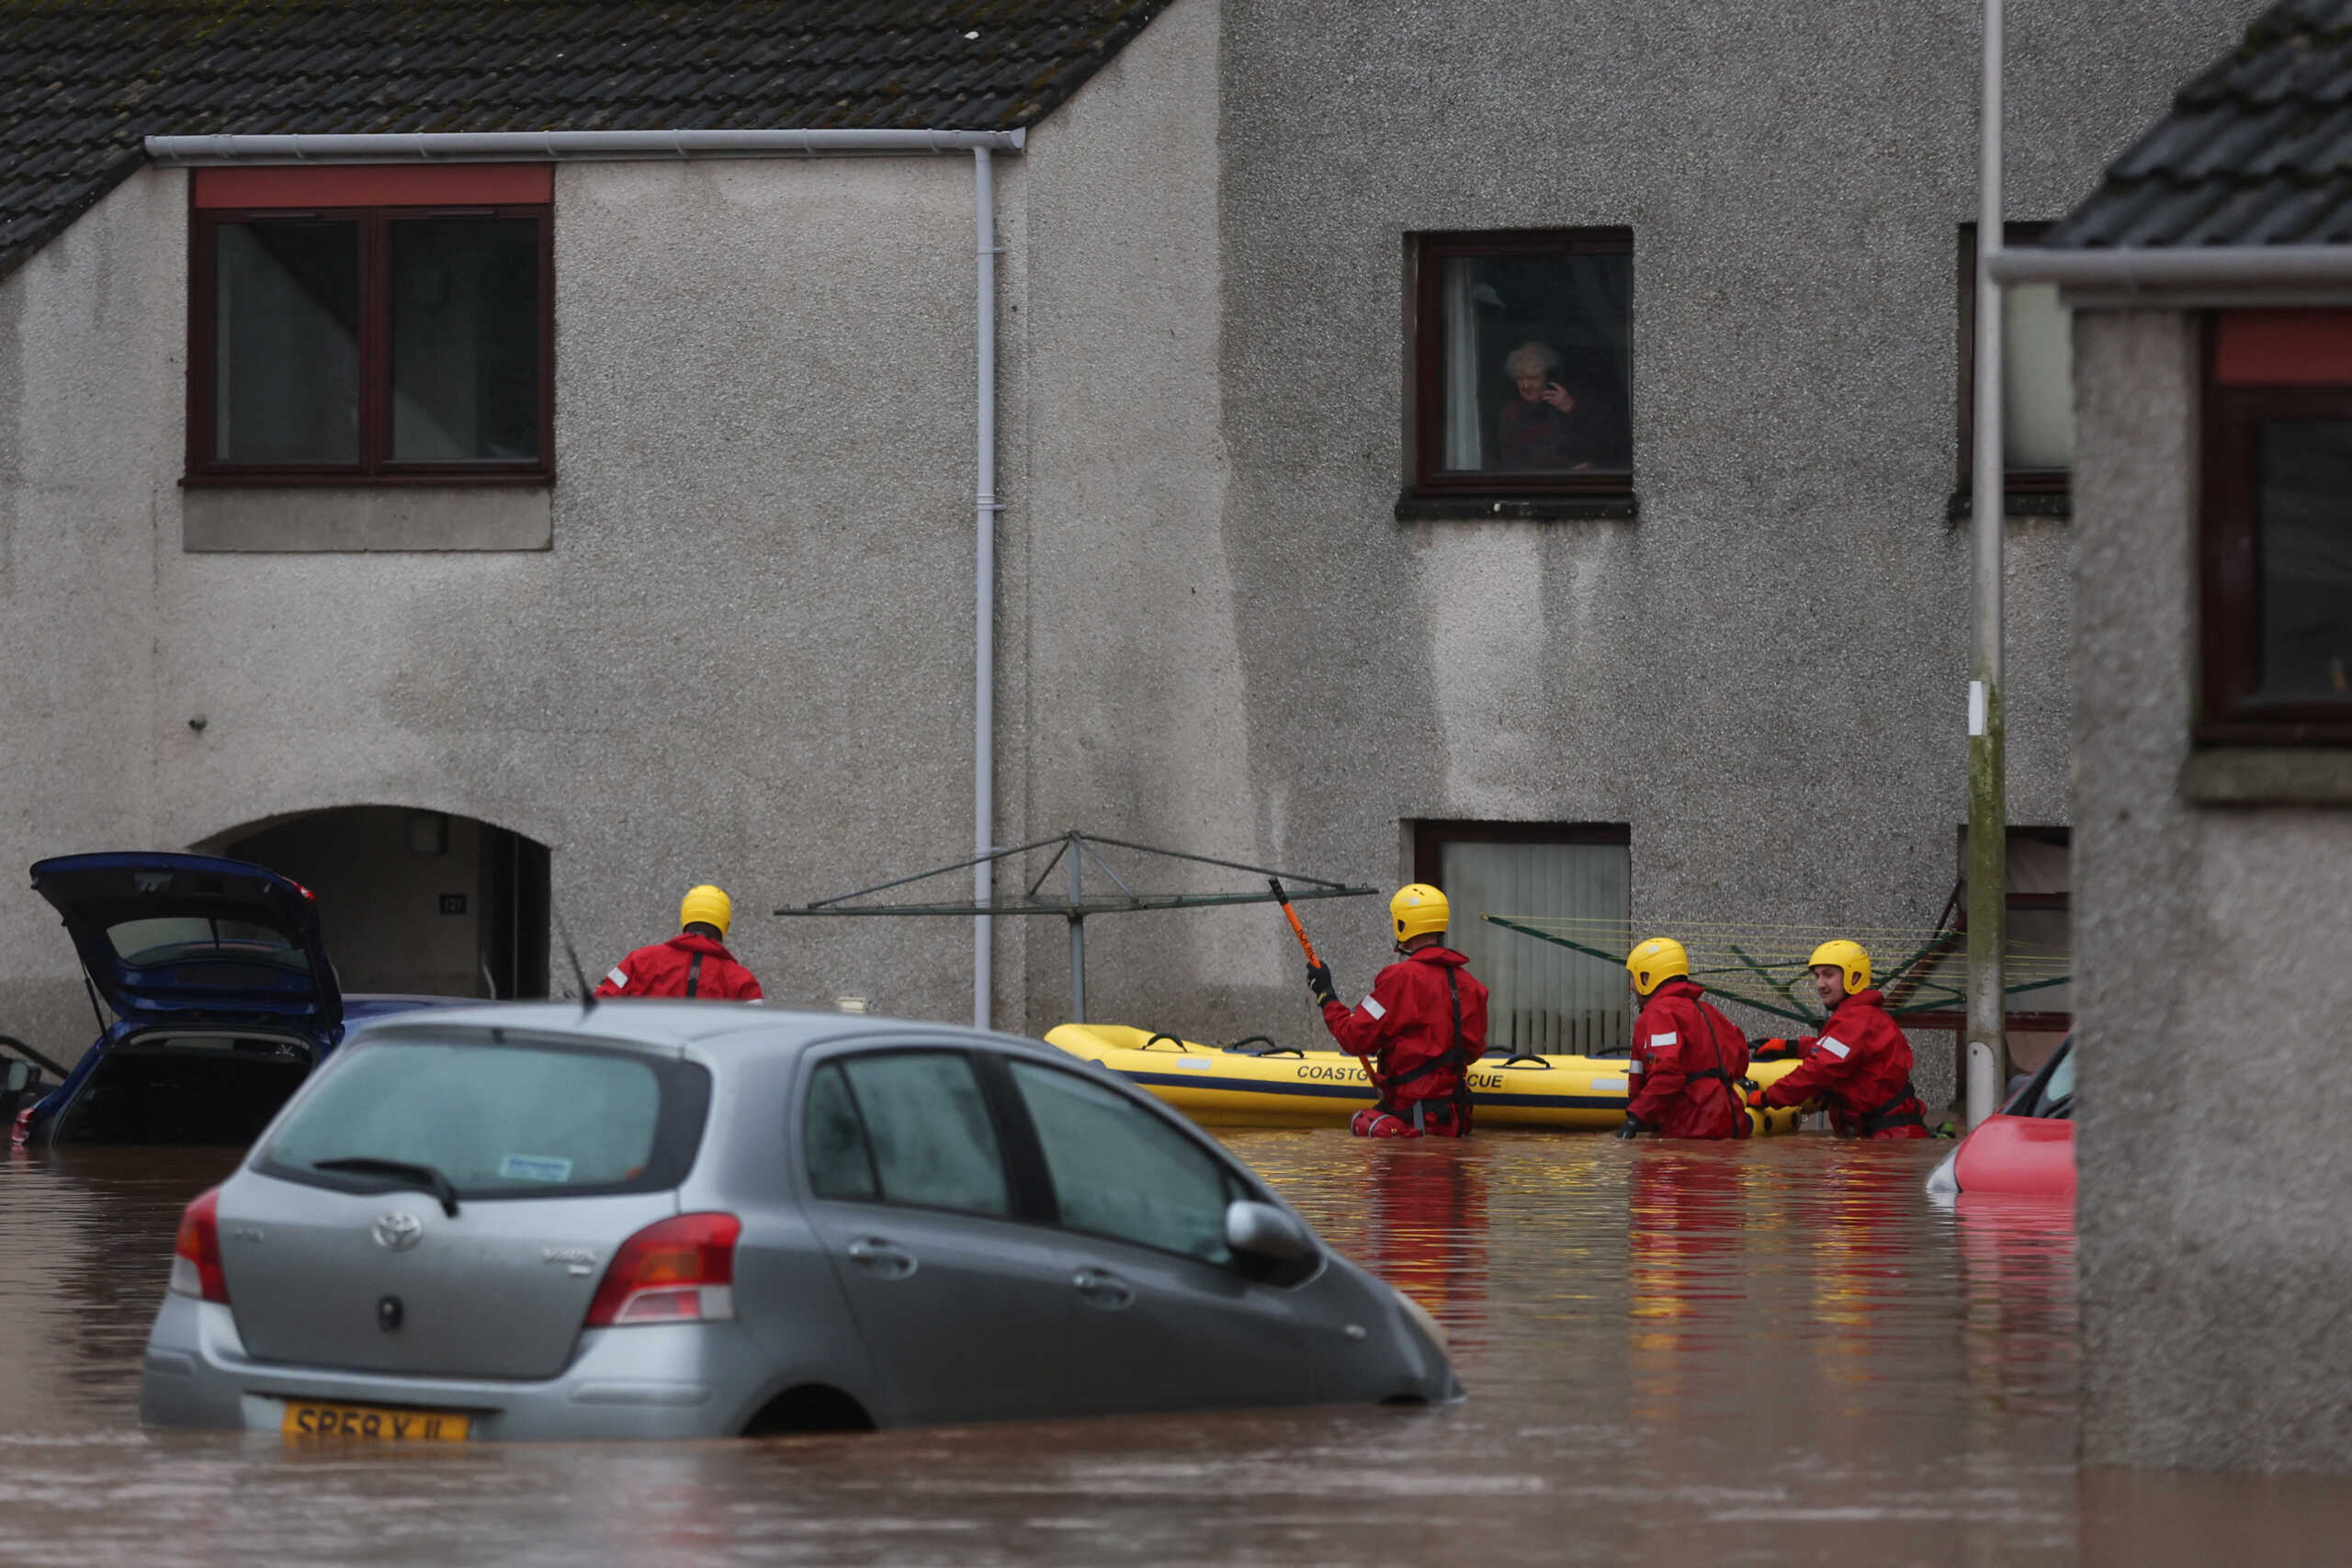 Σκωτία: Παραμένει σε «κόκκινο συναγερμό» για την καταιγίδα Μπαμπέτ – Δύο νεκροί, μεγάλες πλημμύρες